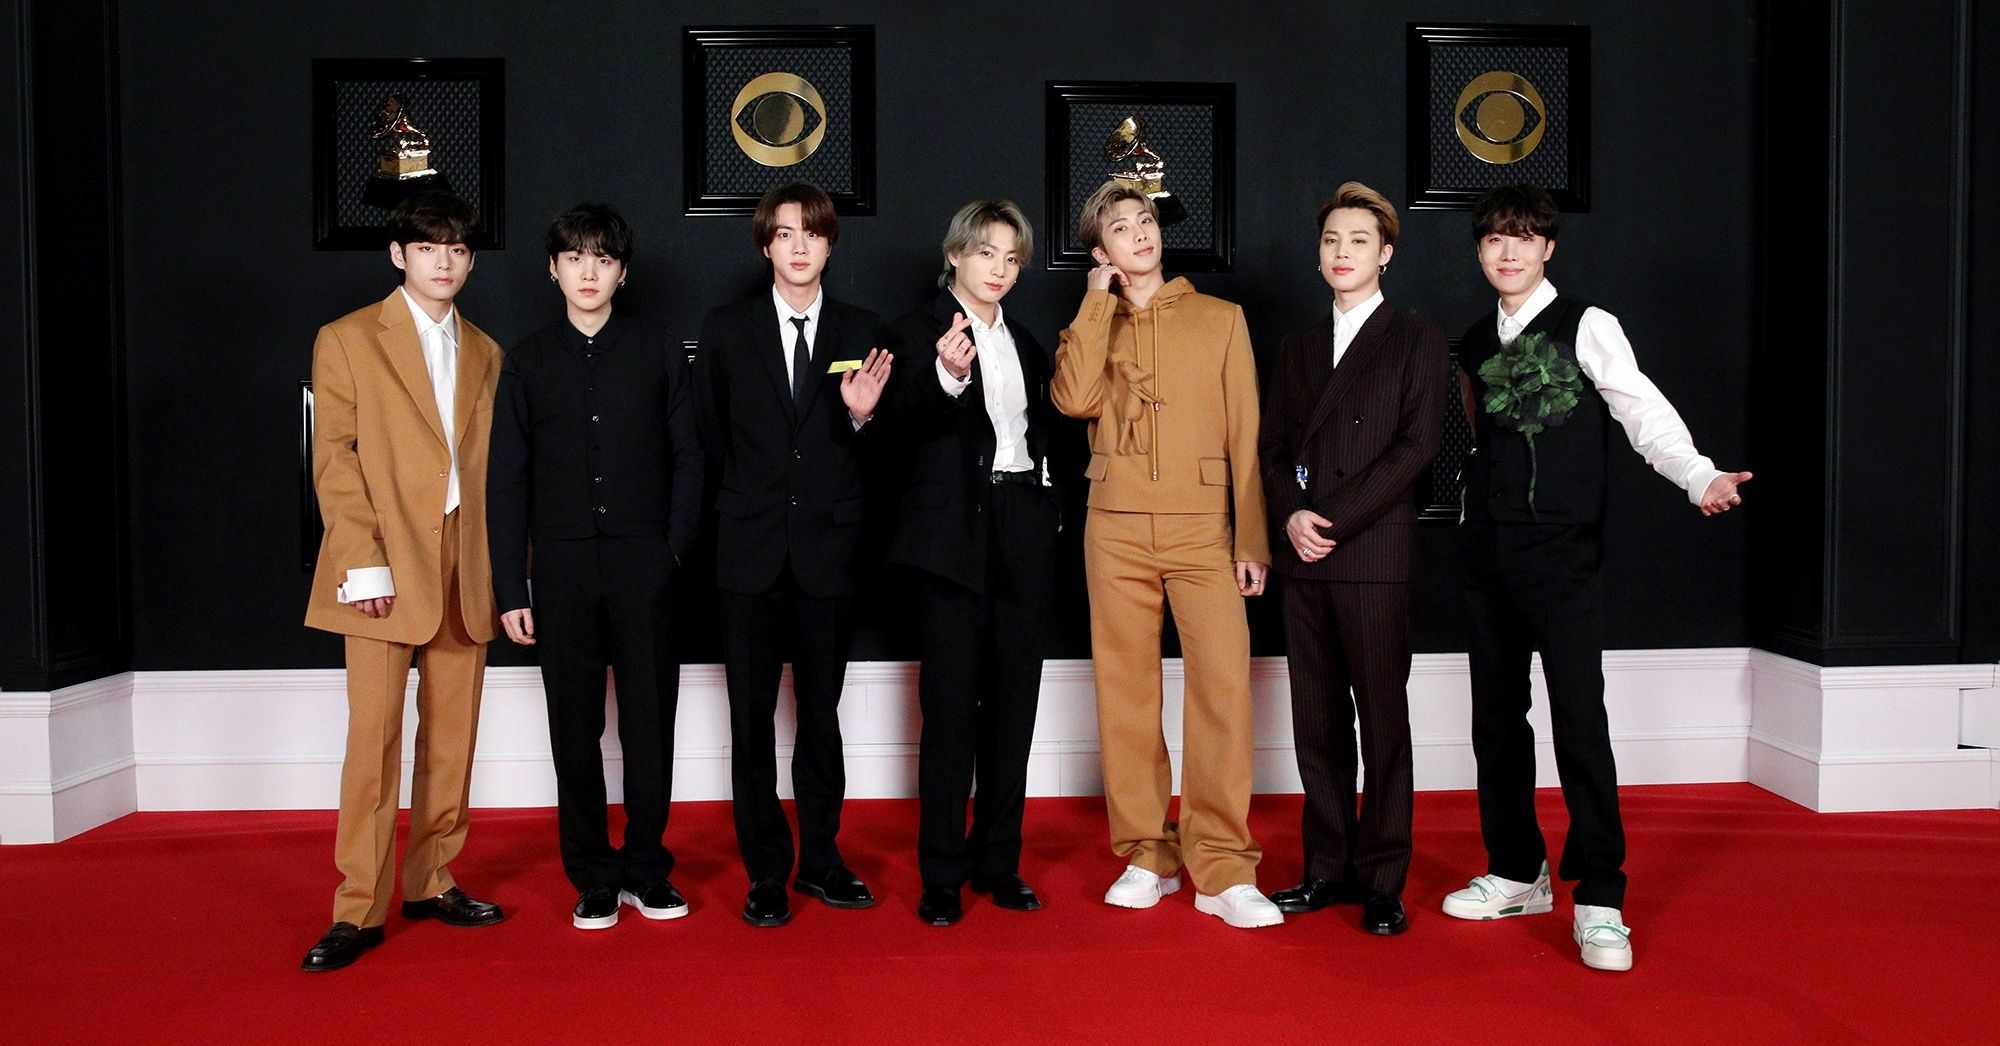 velordnet Hændelse, begivenhed Delegation BTS were the real winners of the 2021 Grammys red carpet